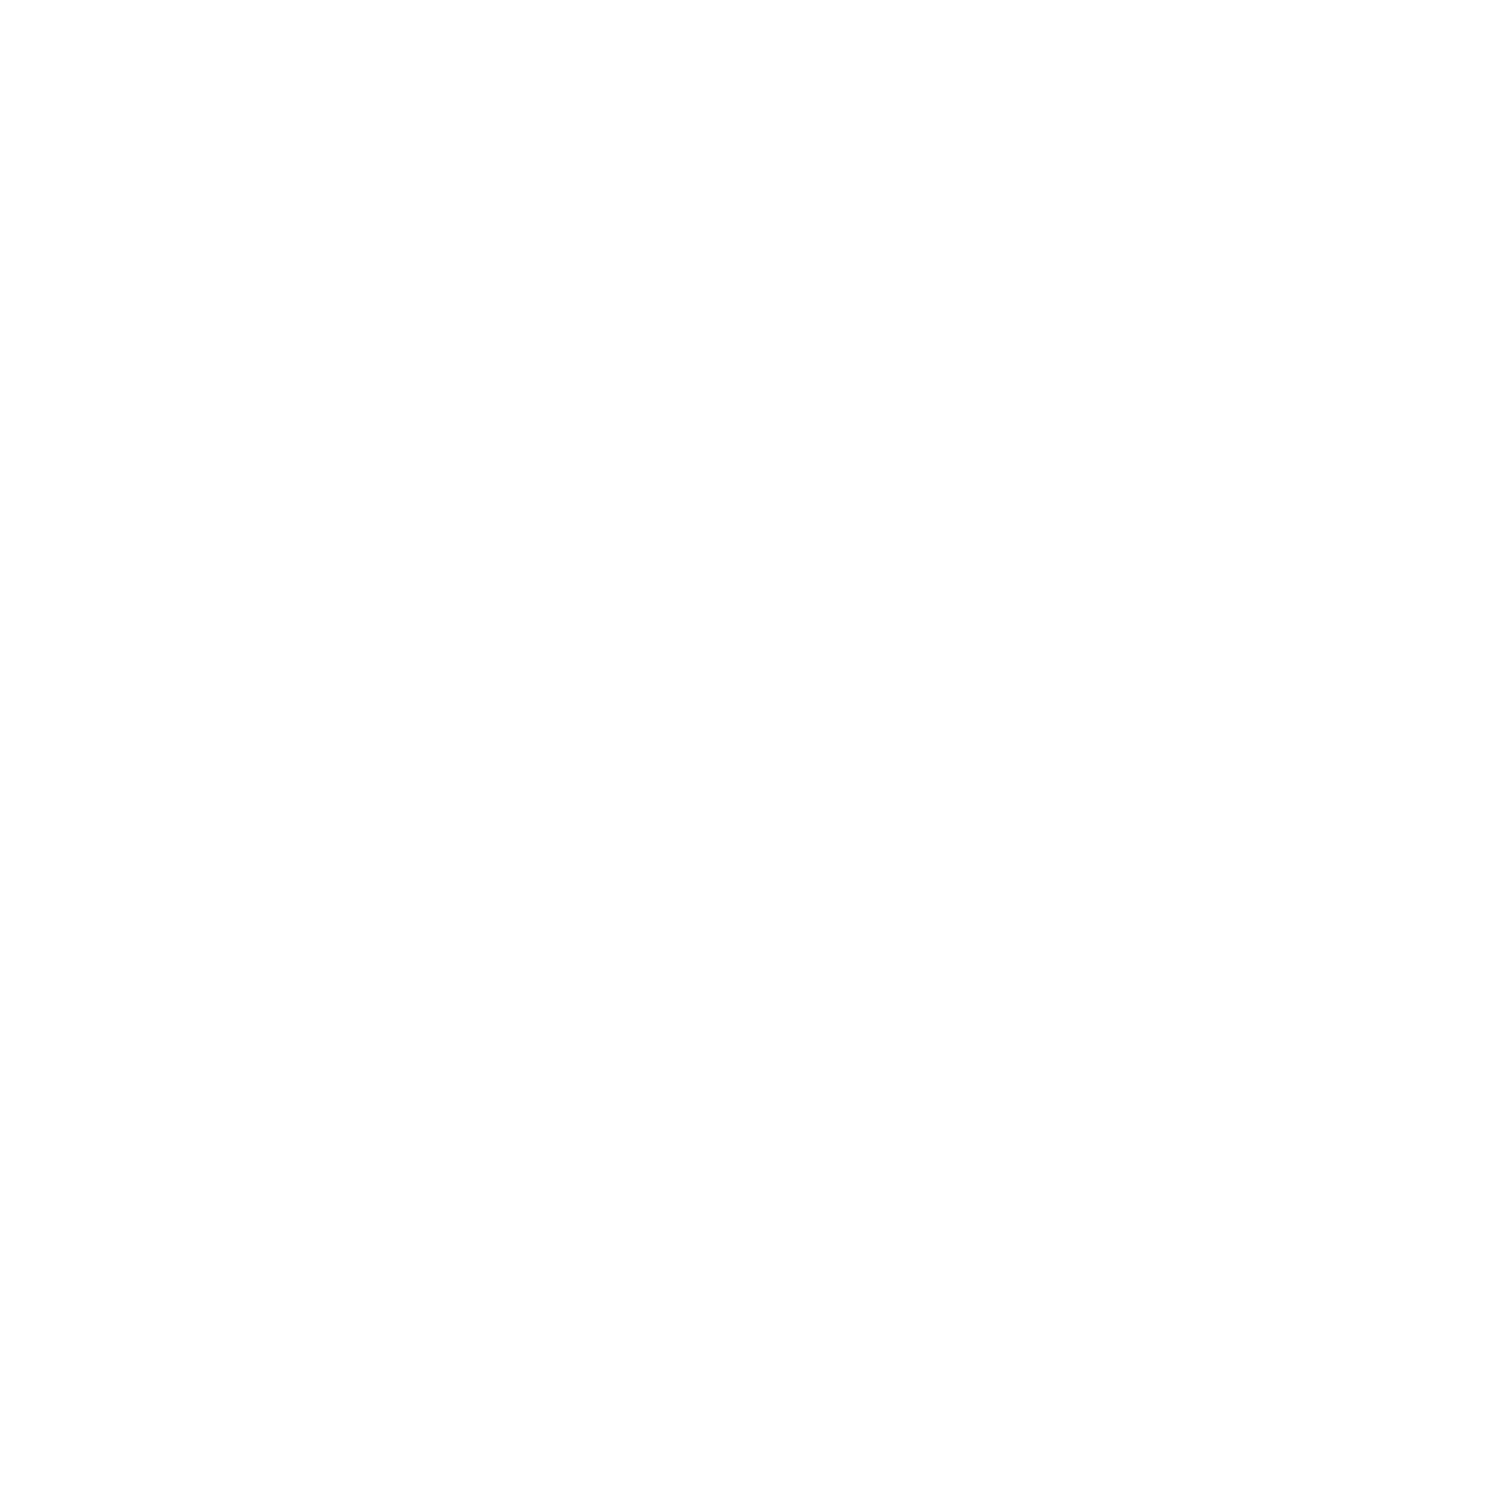 Livermore Family Pet Hospital